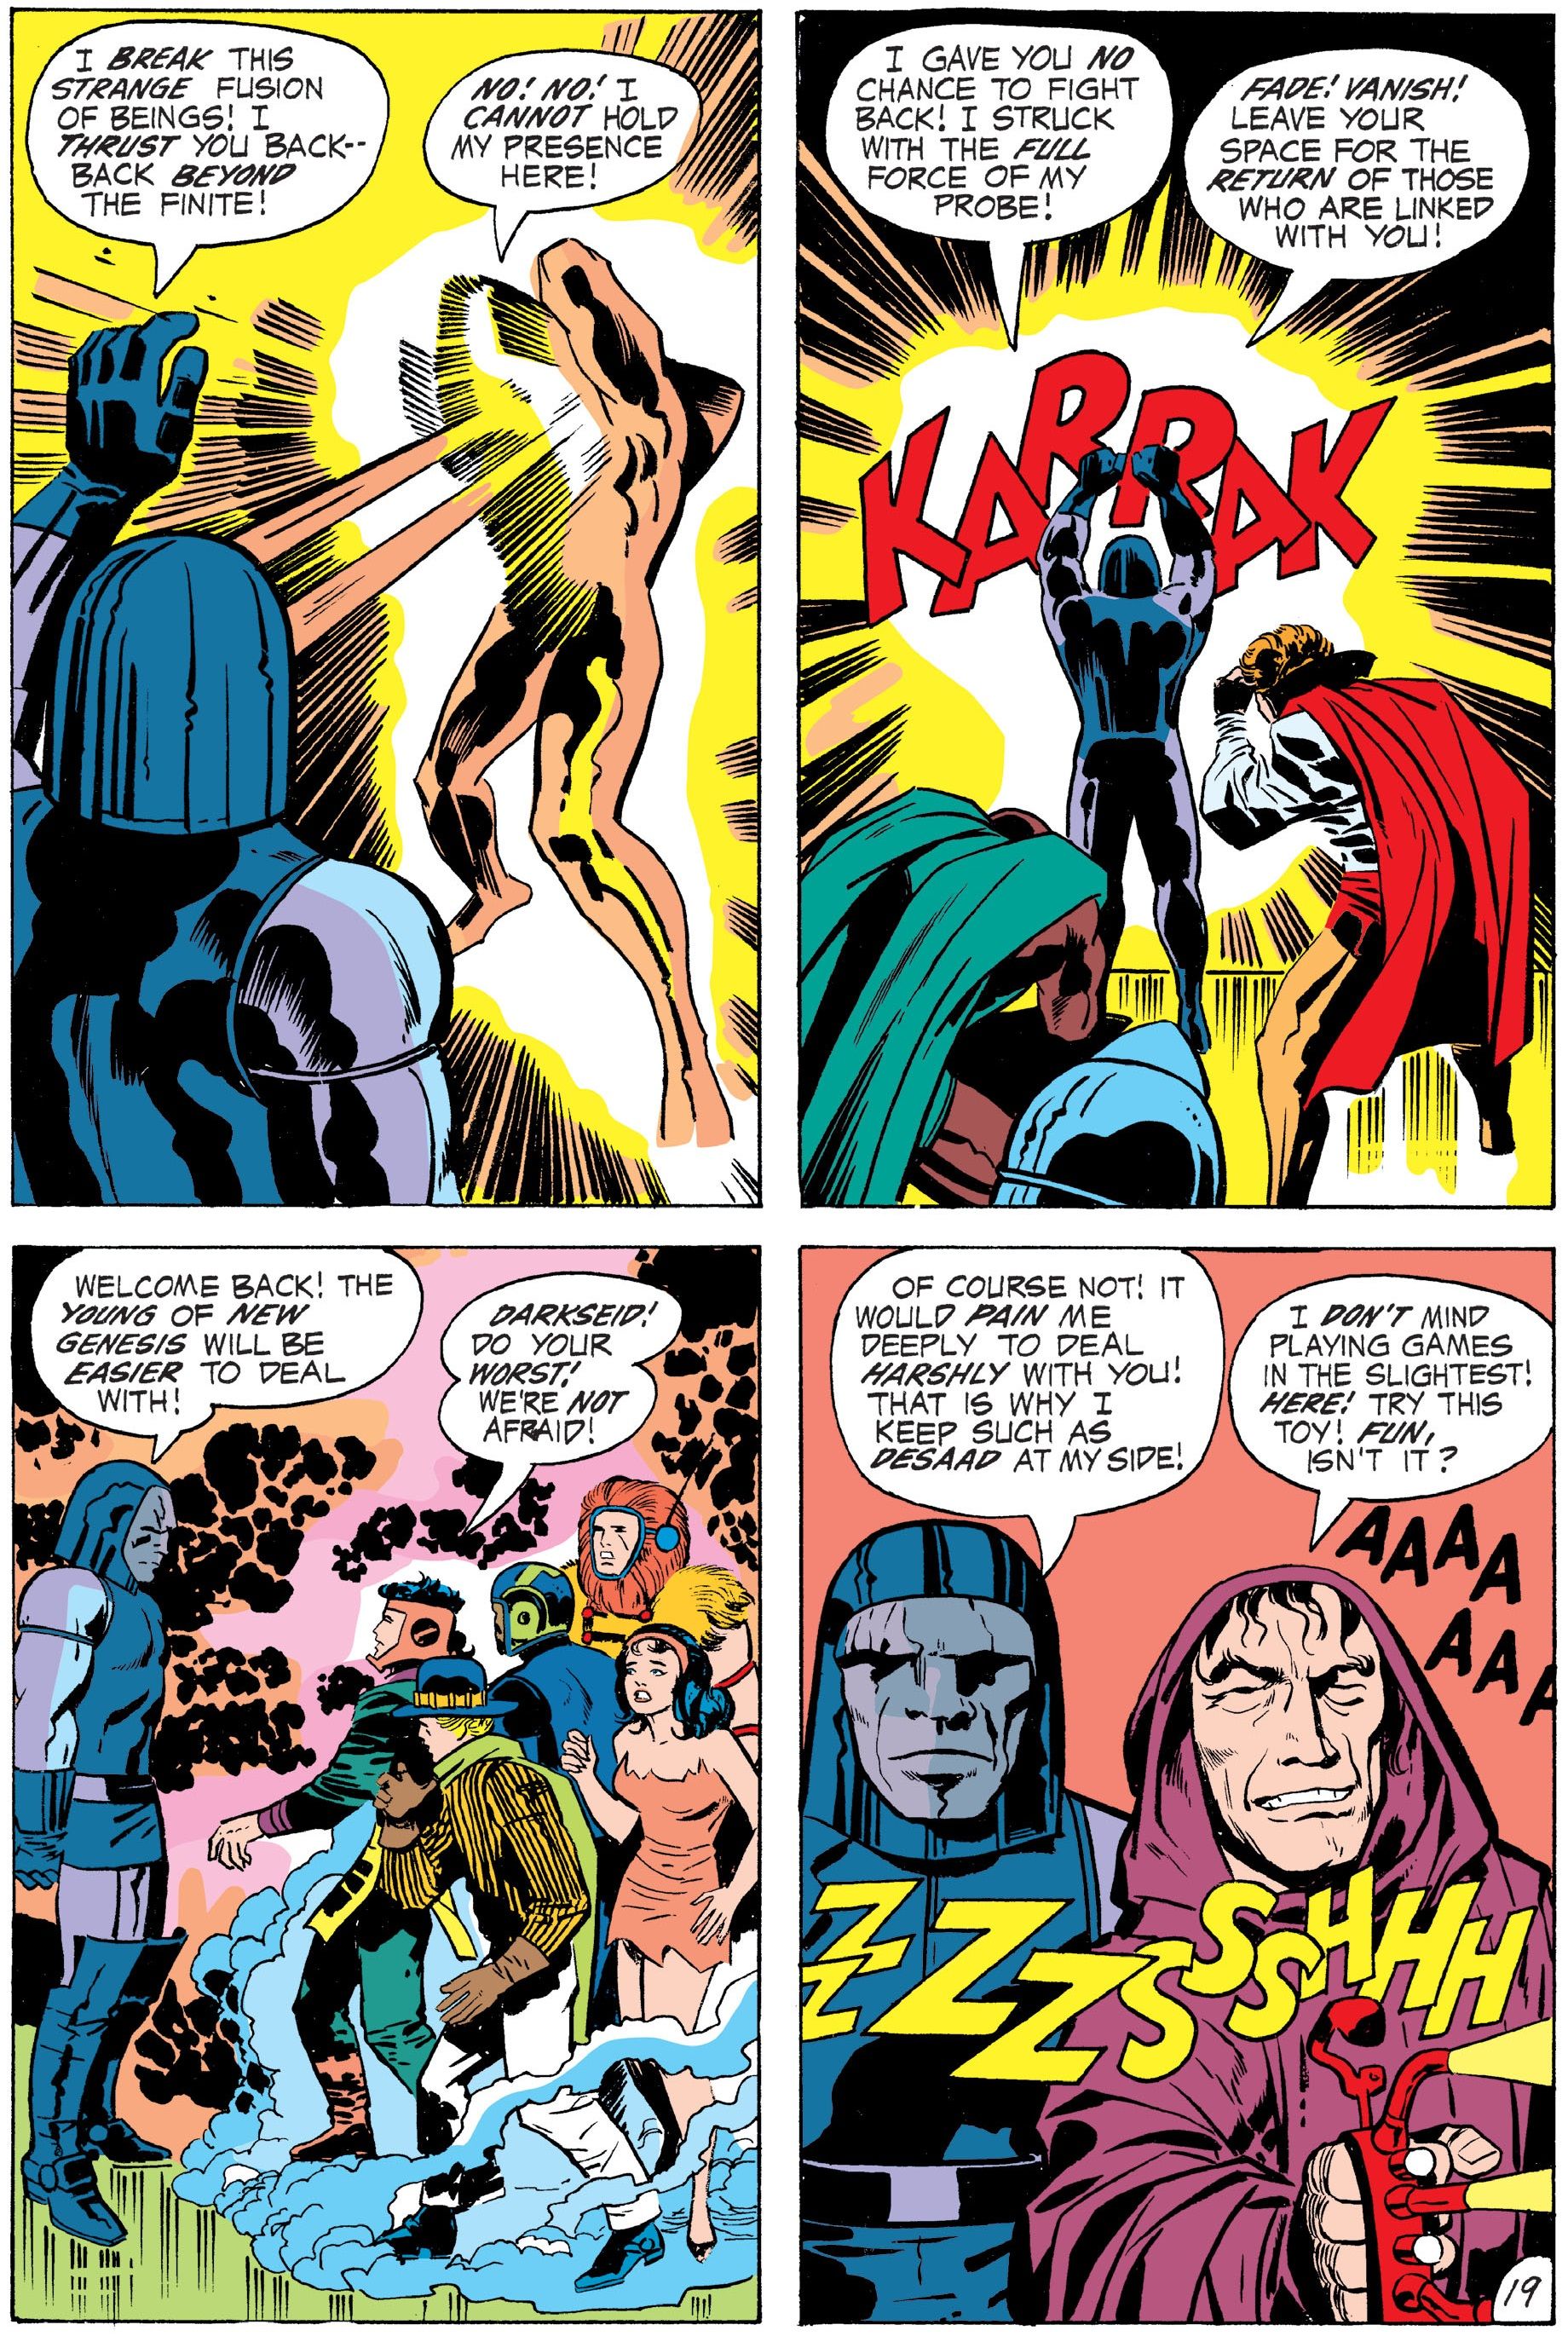 Darkseid breaks down the Forever People